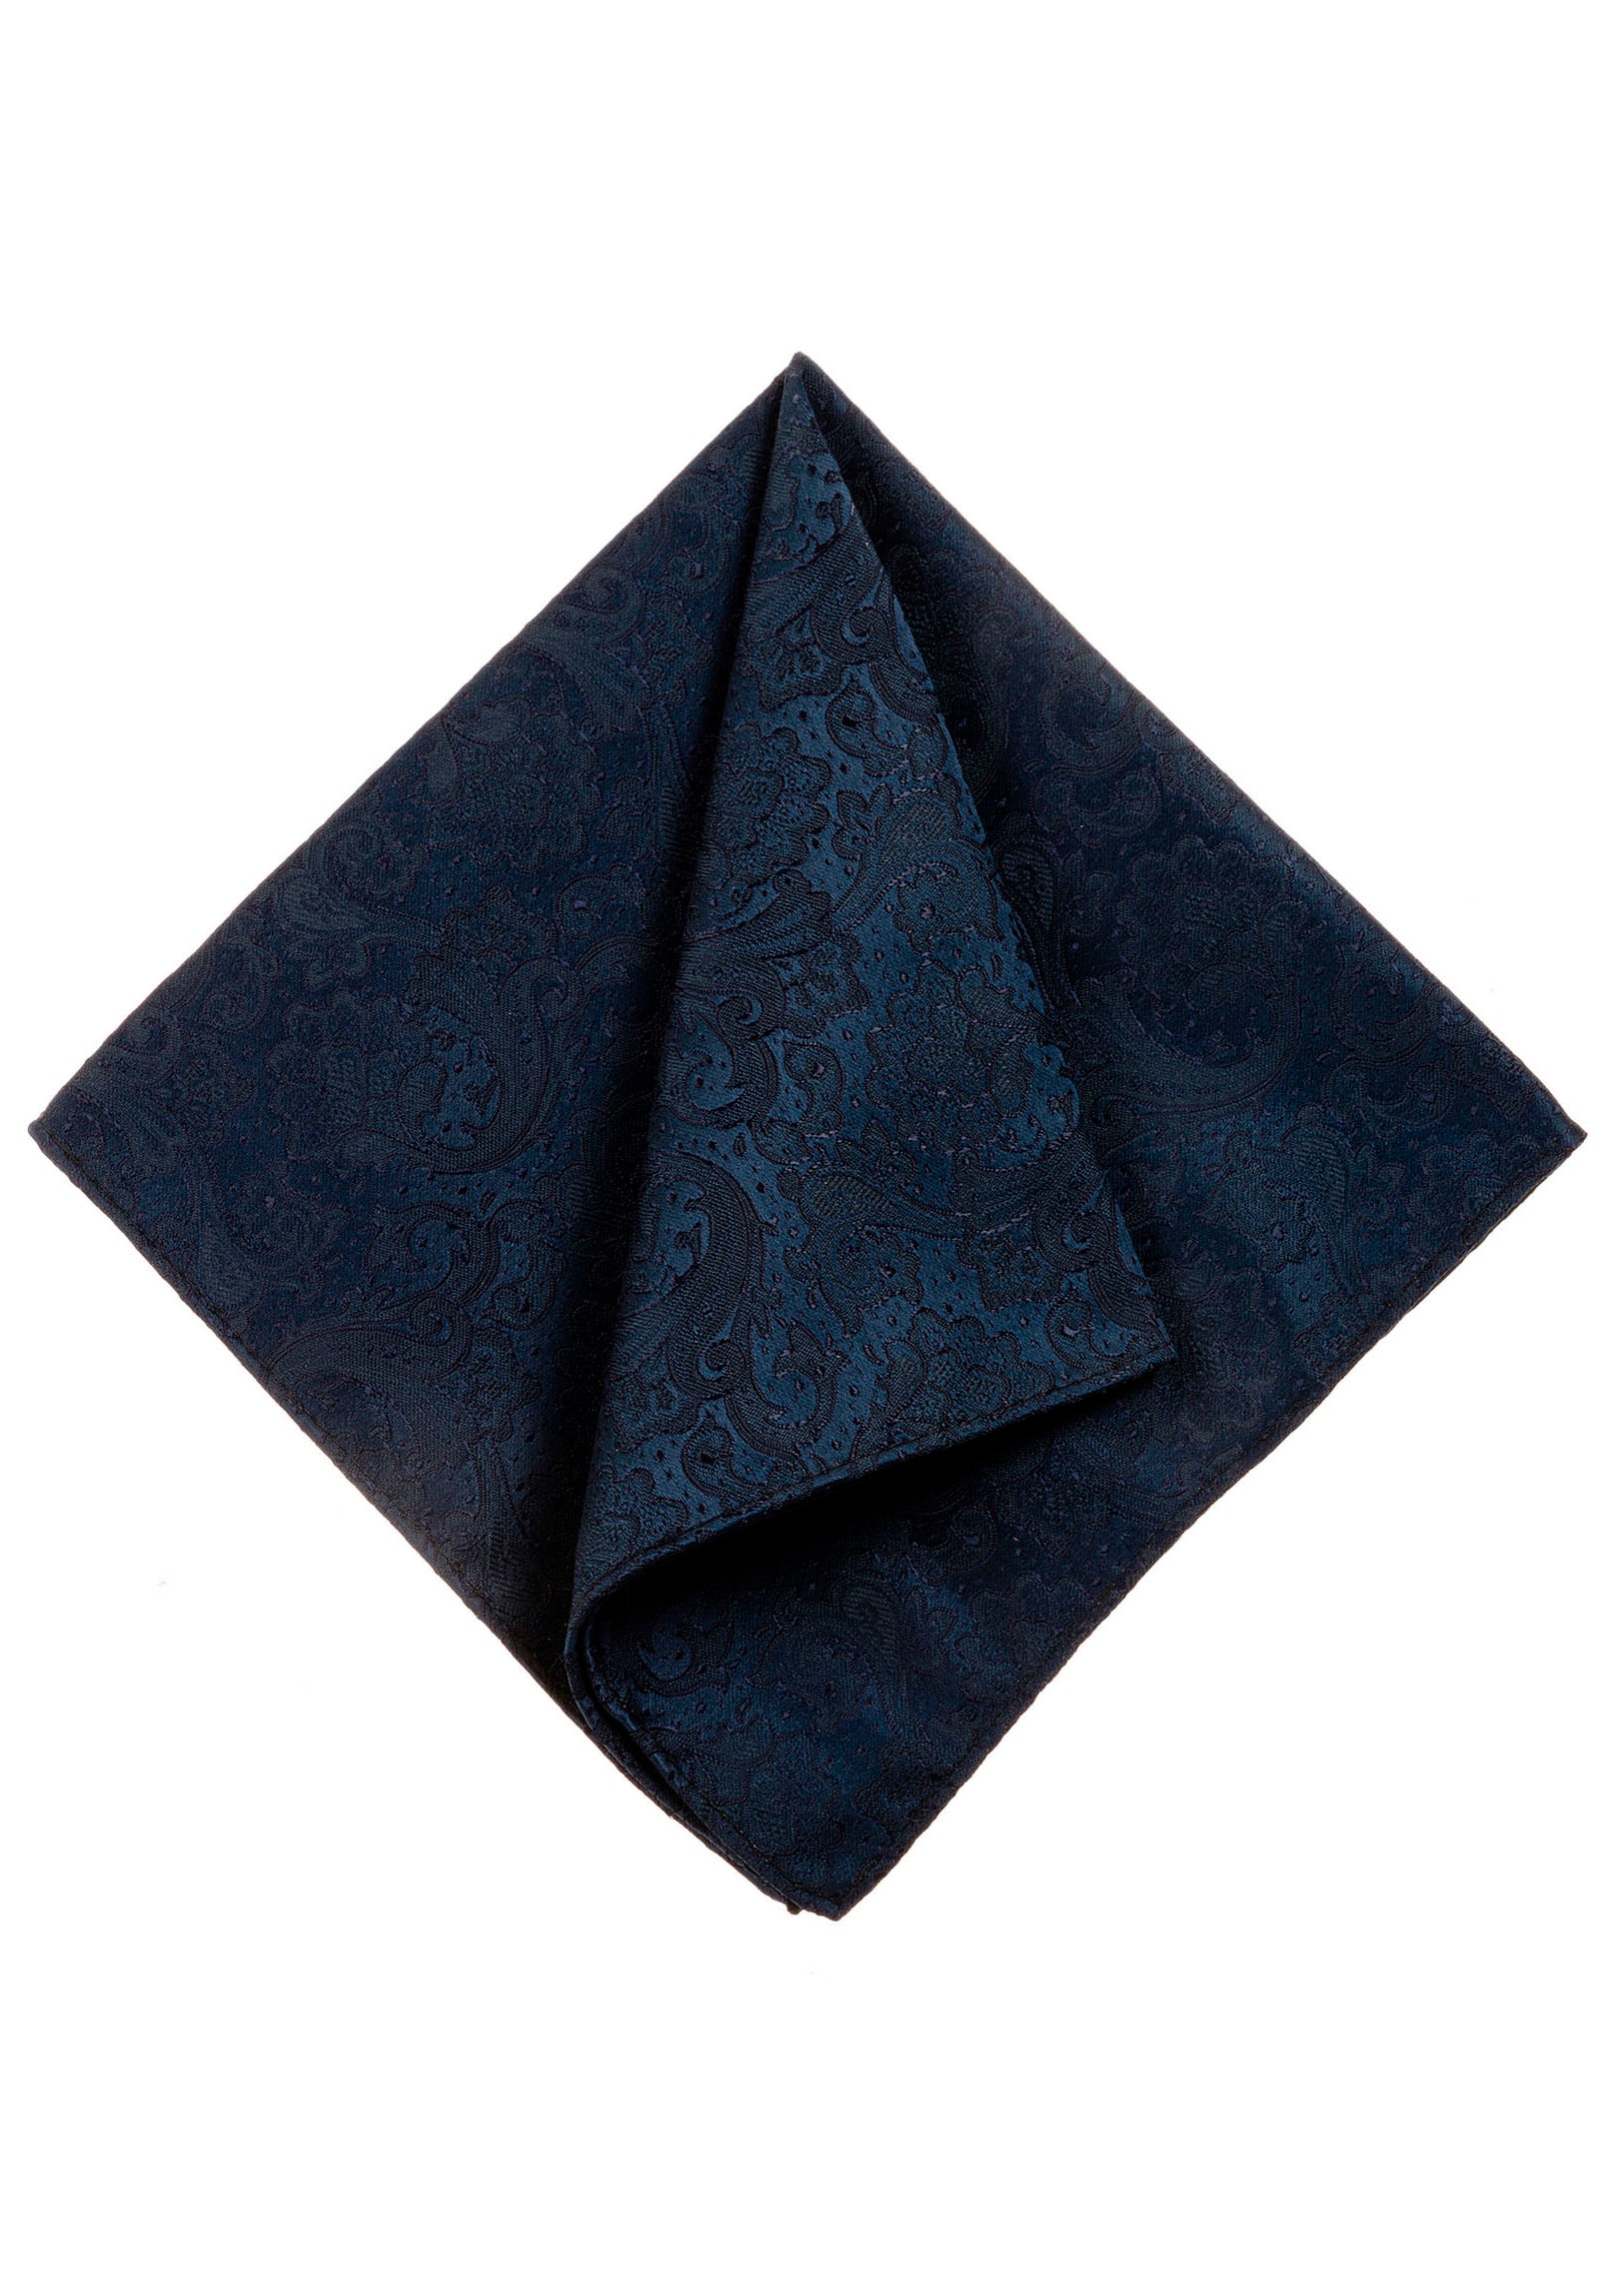 MONTI Einstecktuch »TITAN«, Paisley-Muster, Hochwertig verarbeitetes Einstecktuch handrolliert